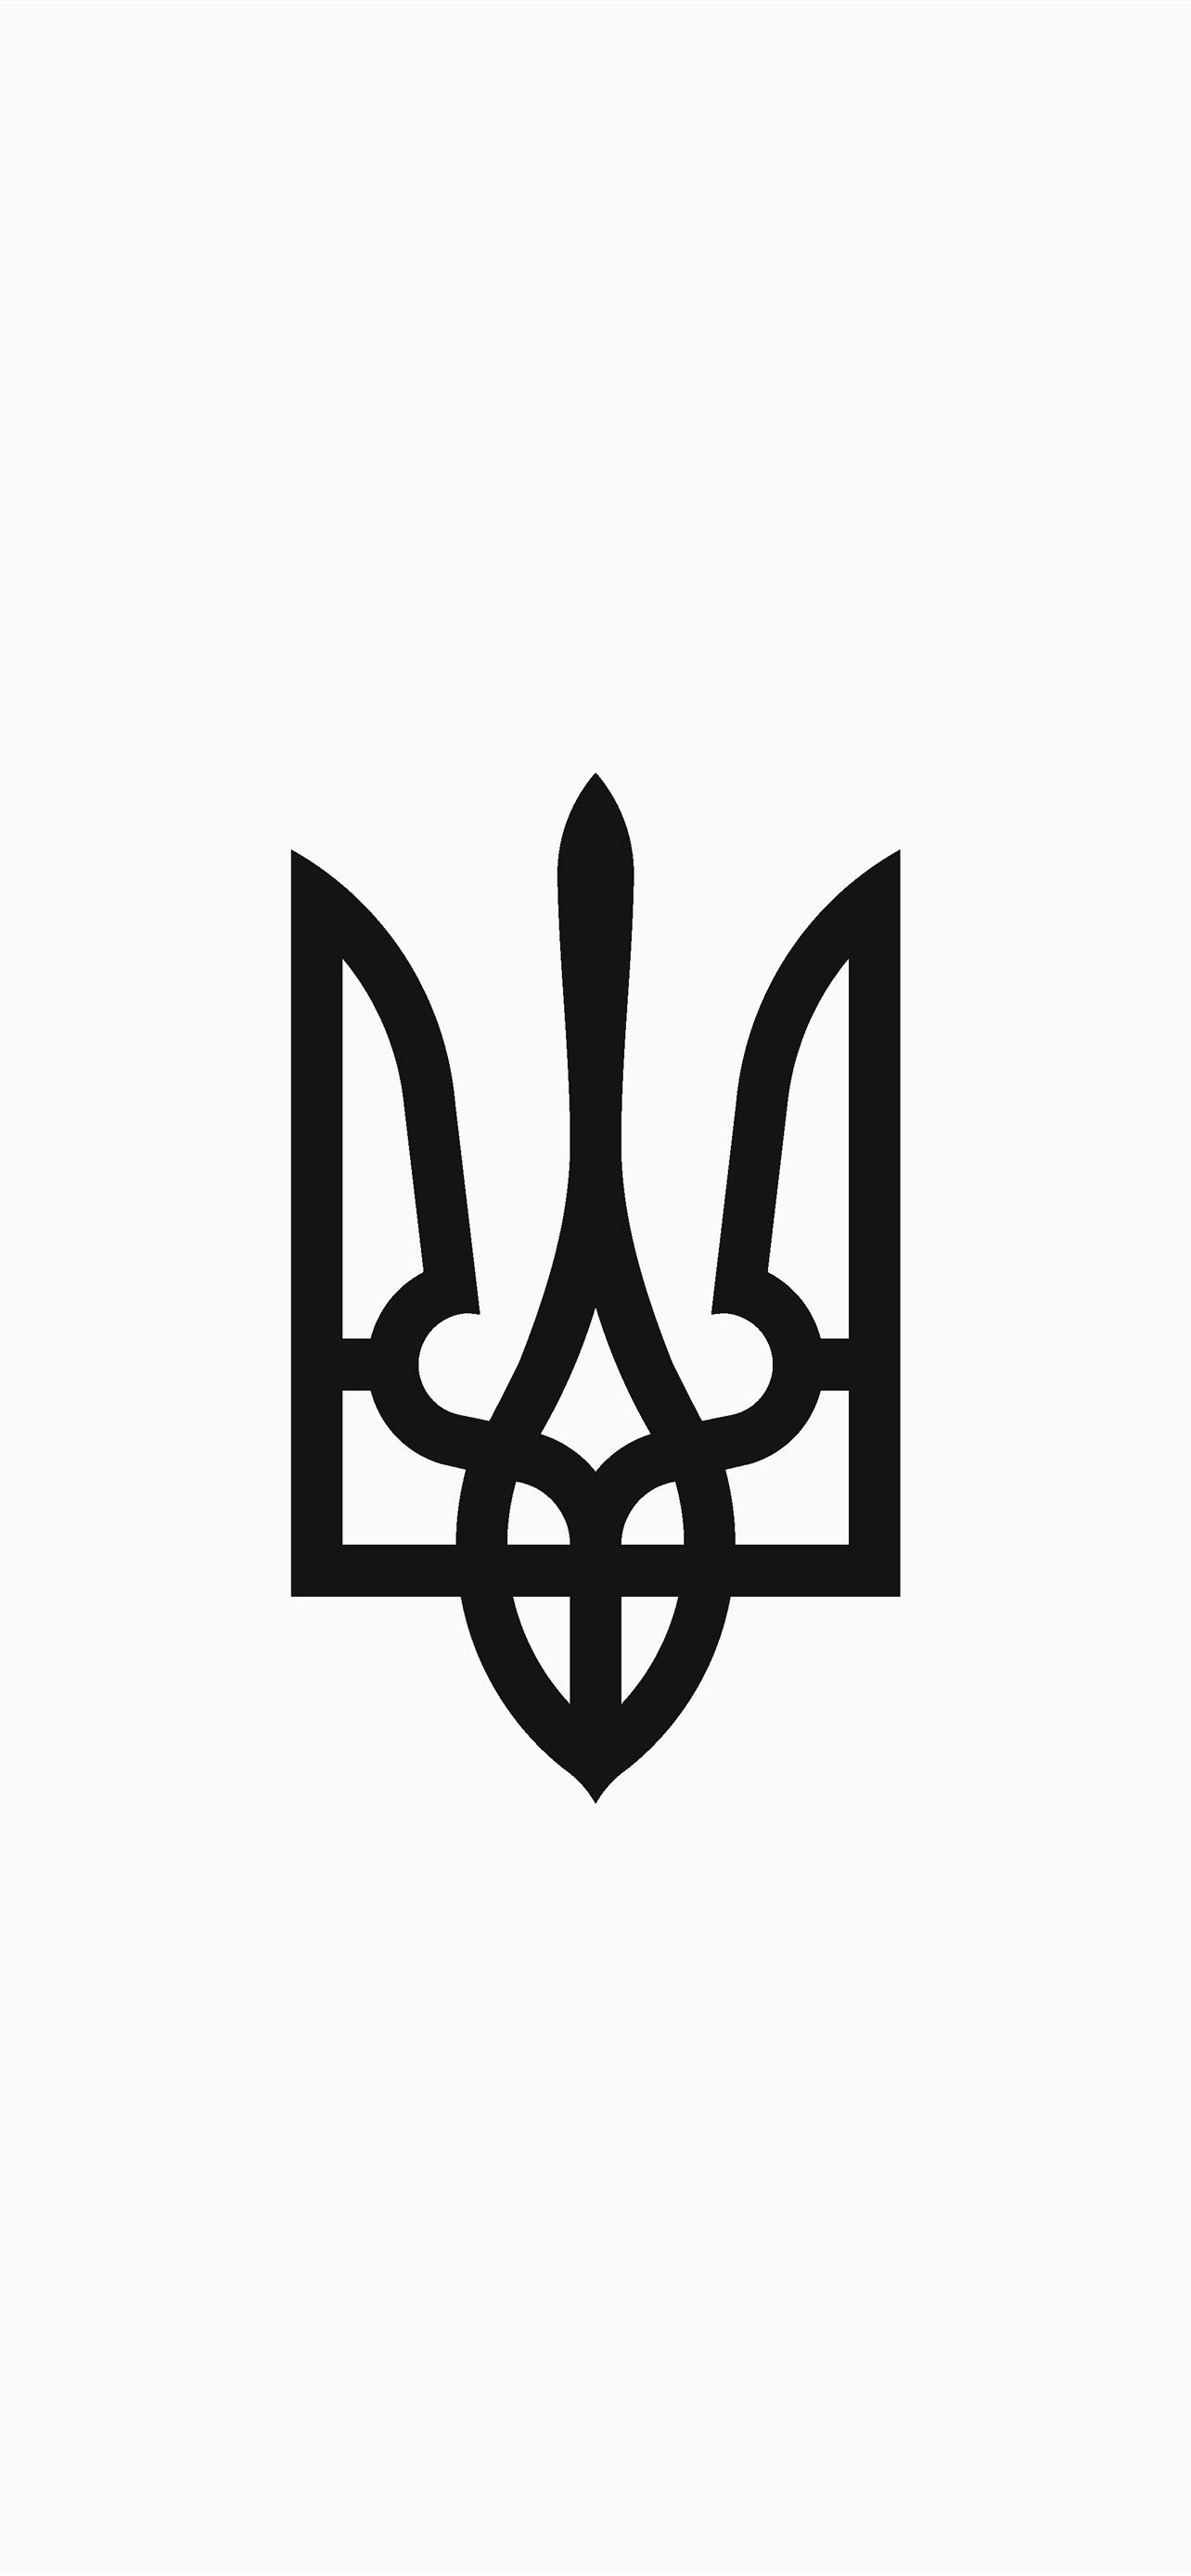 Bạn muốn trang trí cho chiếc iPhone của mình với một hình nền độc đáo và đầy ý nghĩa? Hãy xem hình ảnh liên quan đến hình nền iPhone với cờ Ukraina này để tìm kiếm một mẫu hình nền phù hợp với phong cách của bạn!